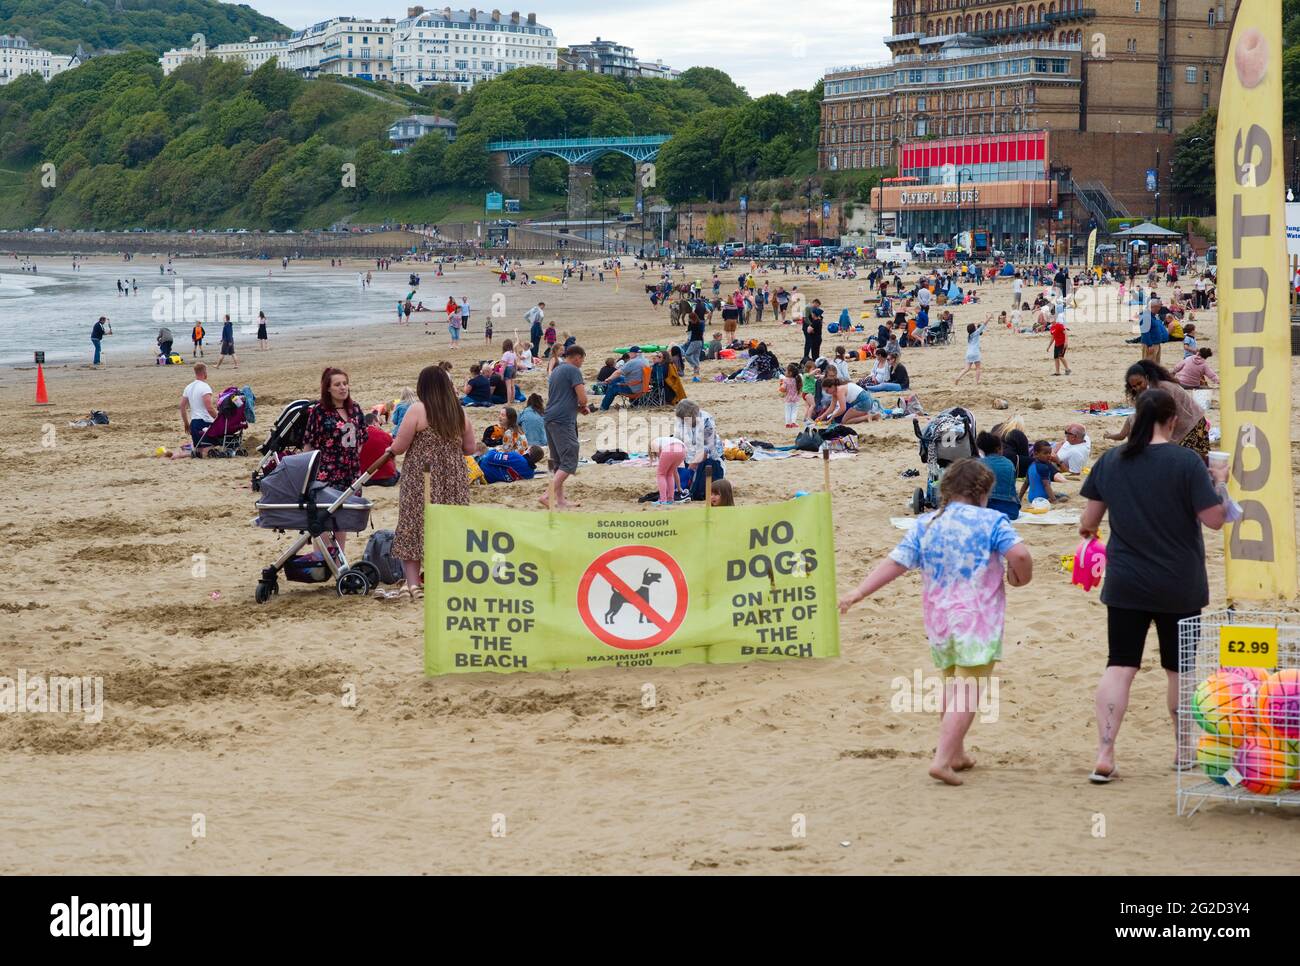 Una trafficata spiaggia di Scarborough durante la metà dei periodi covidi senza cani sul cartello della spiaggia Foto Stock